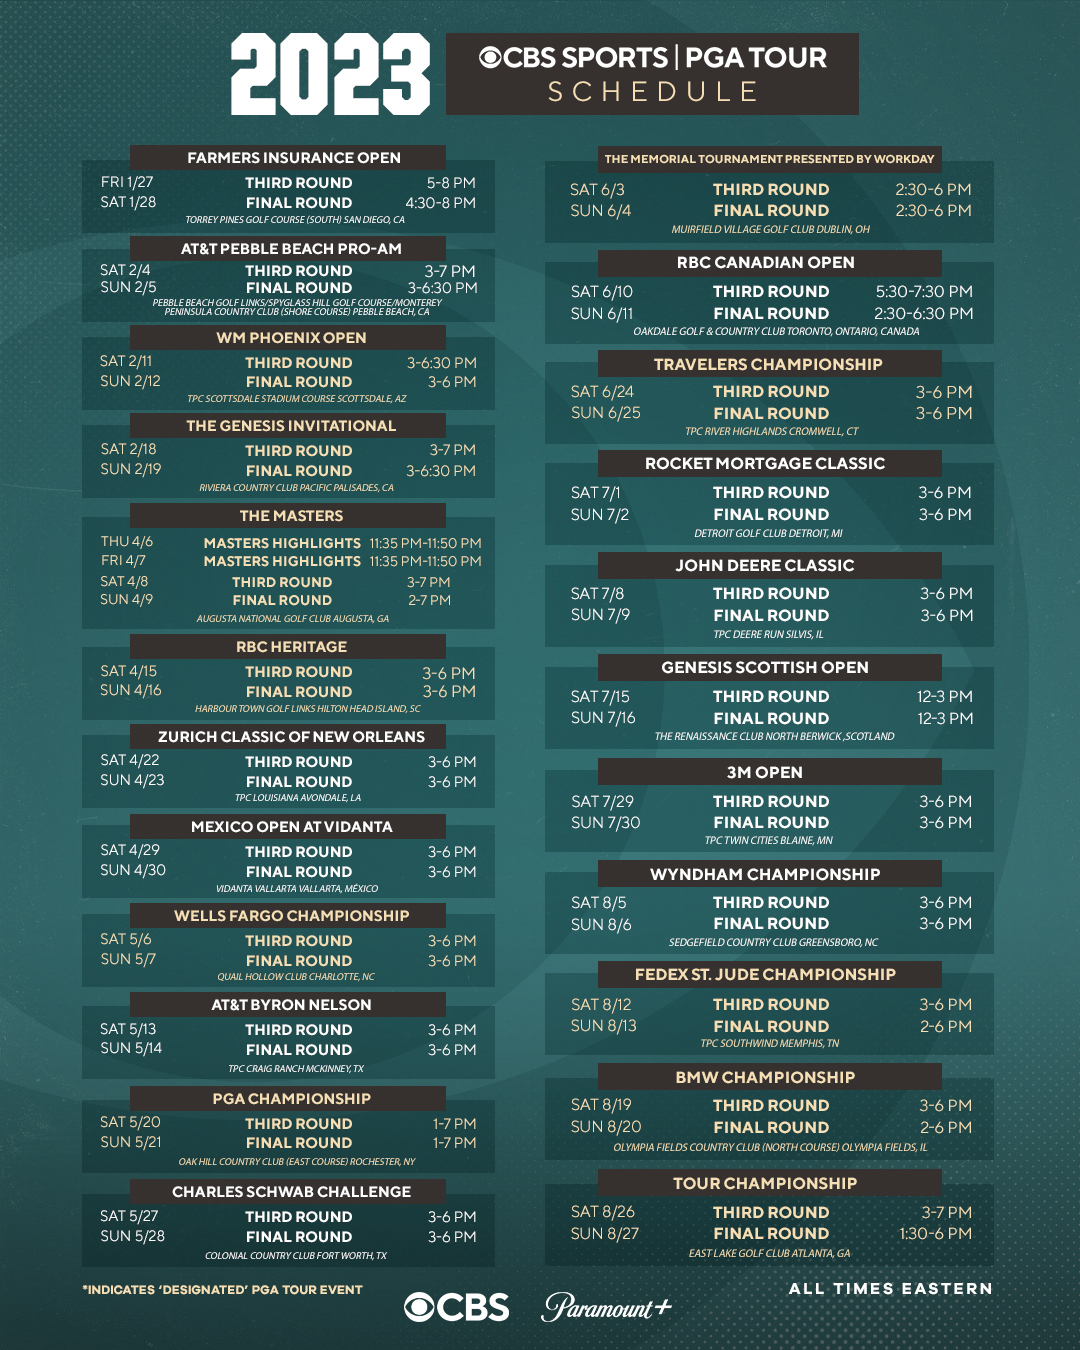 pga tour schedule 2013